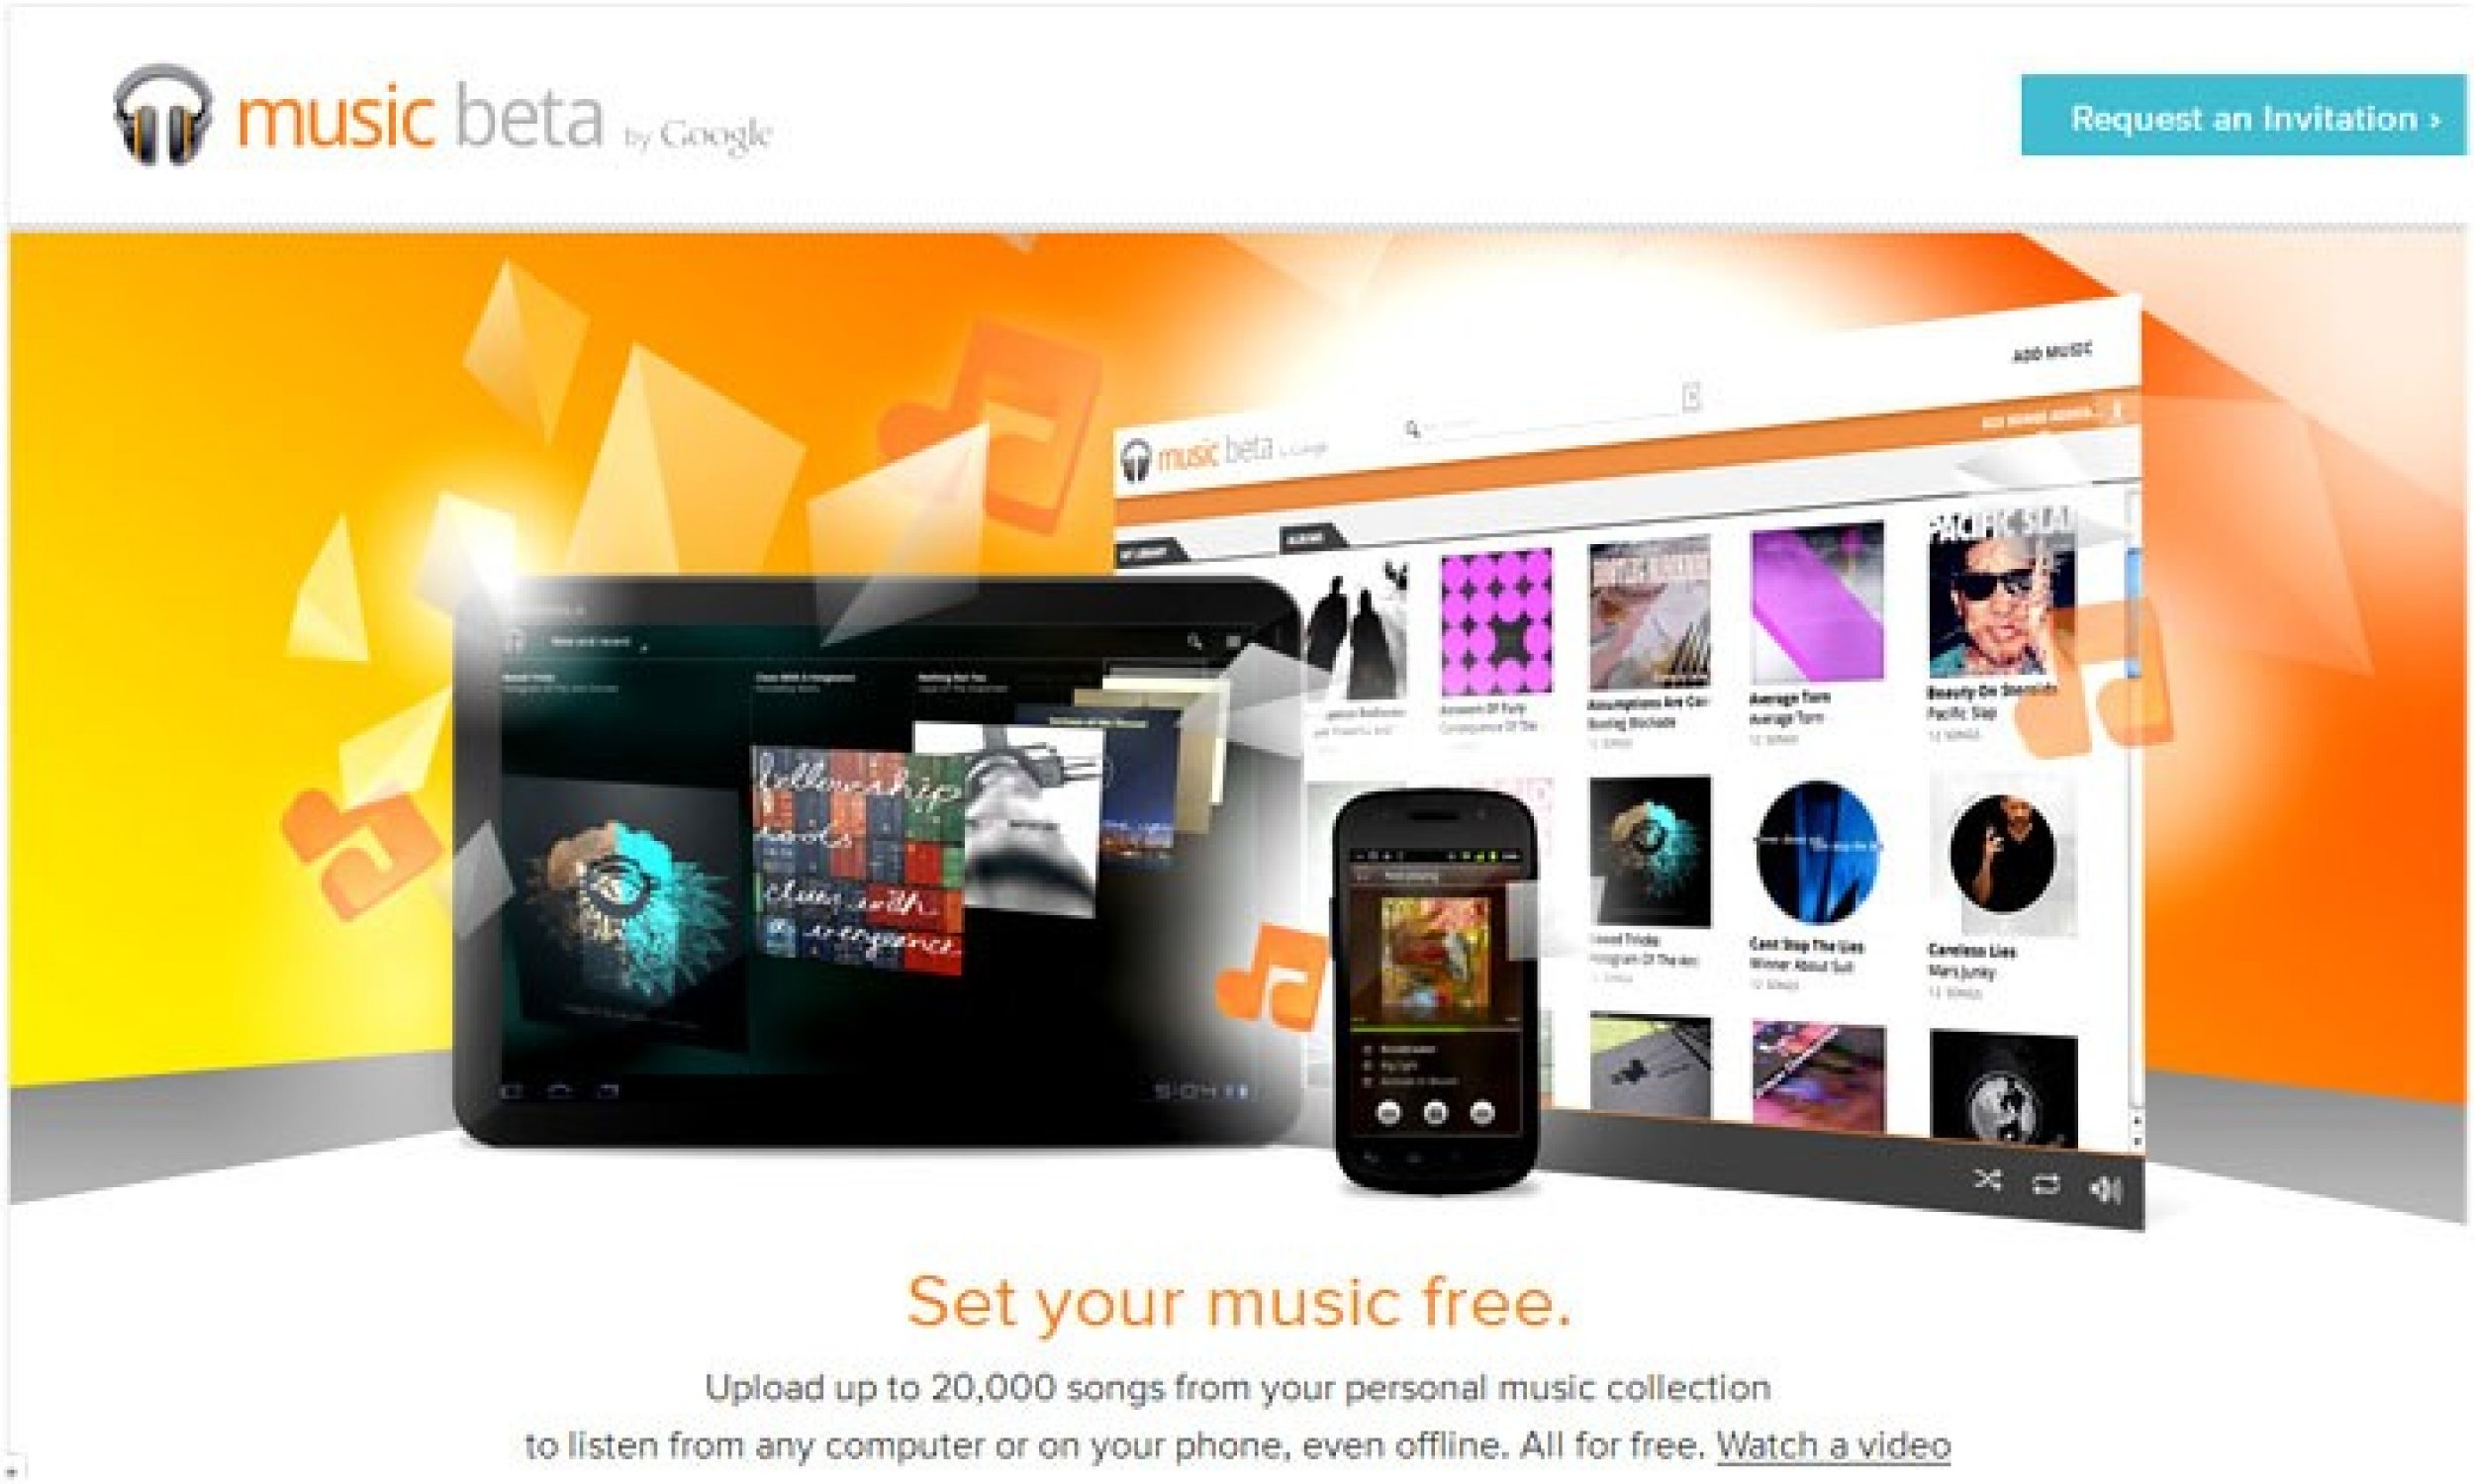 Google Music Beta